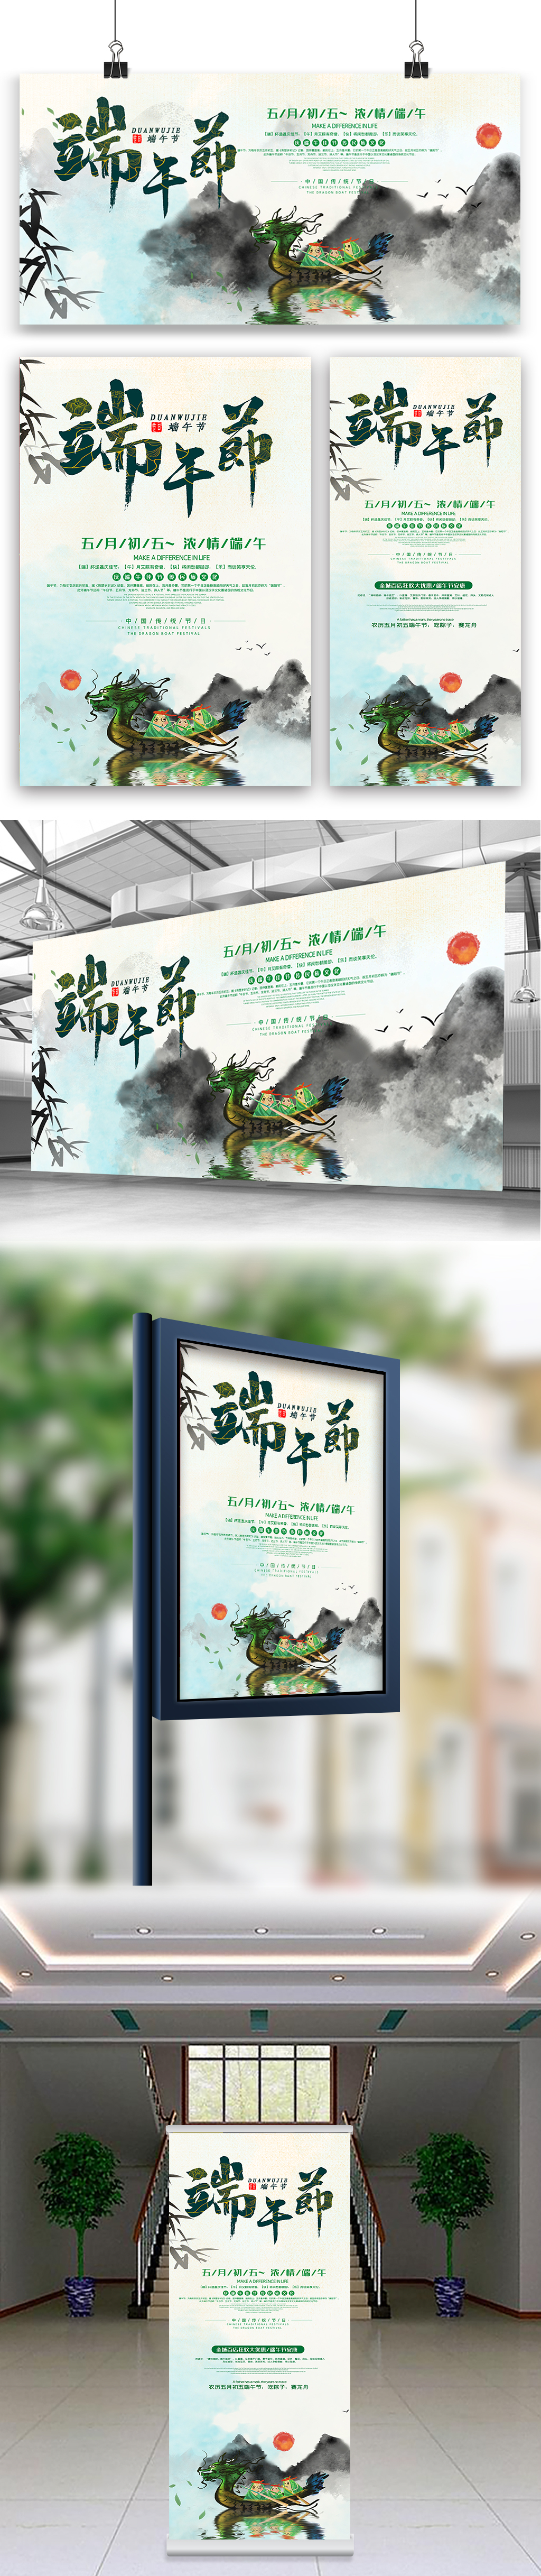 中国风端午节海报展板展架三件套设计图片